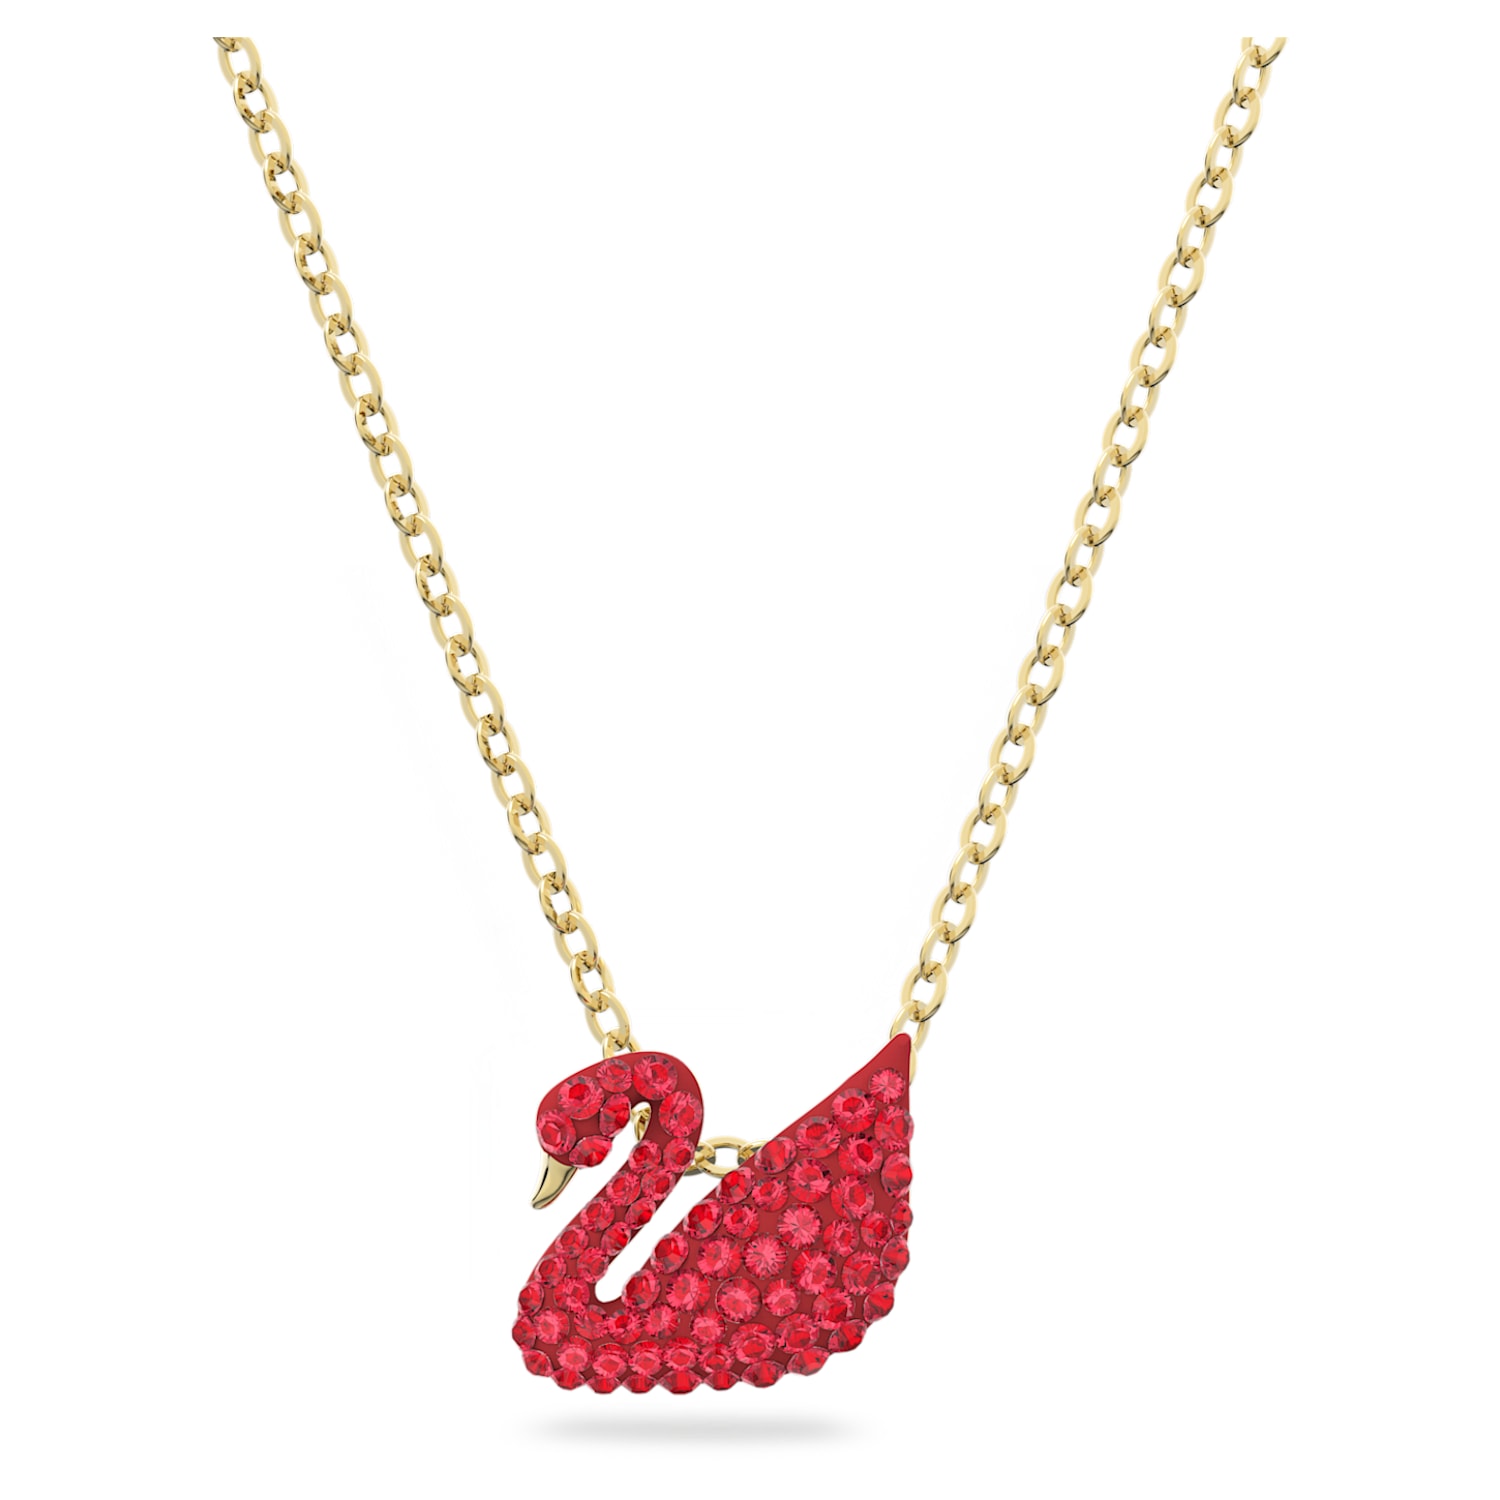 Swarovski Iconic Swan 鏈墜, 天鵝, 細碼, 紅色, 鍍金色色調| Swarovski